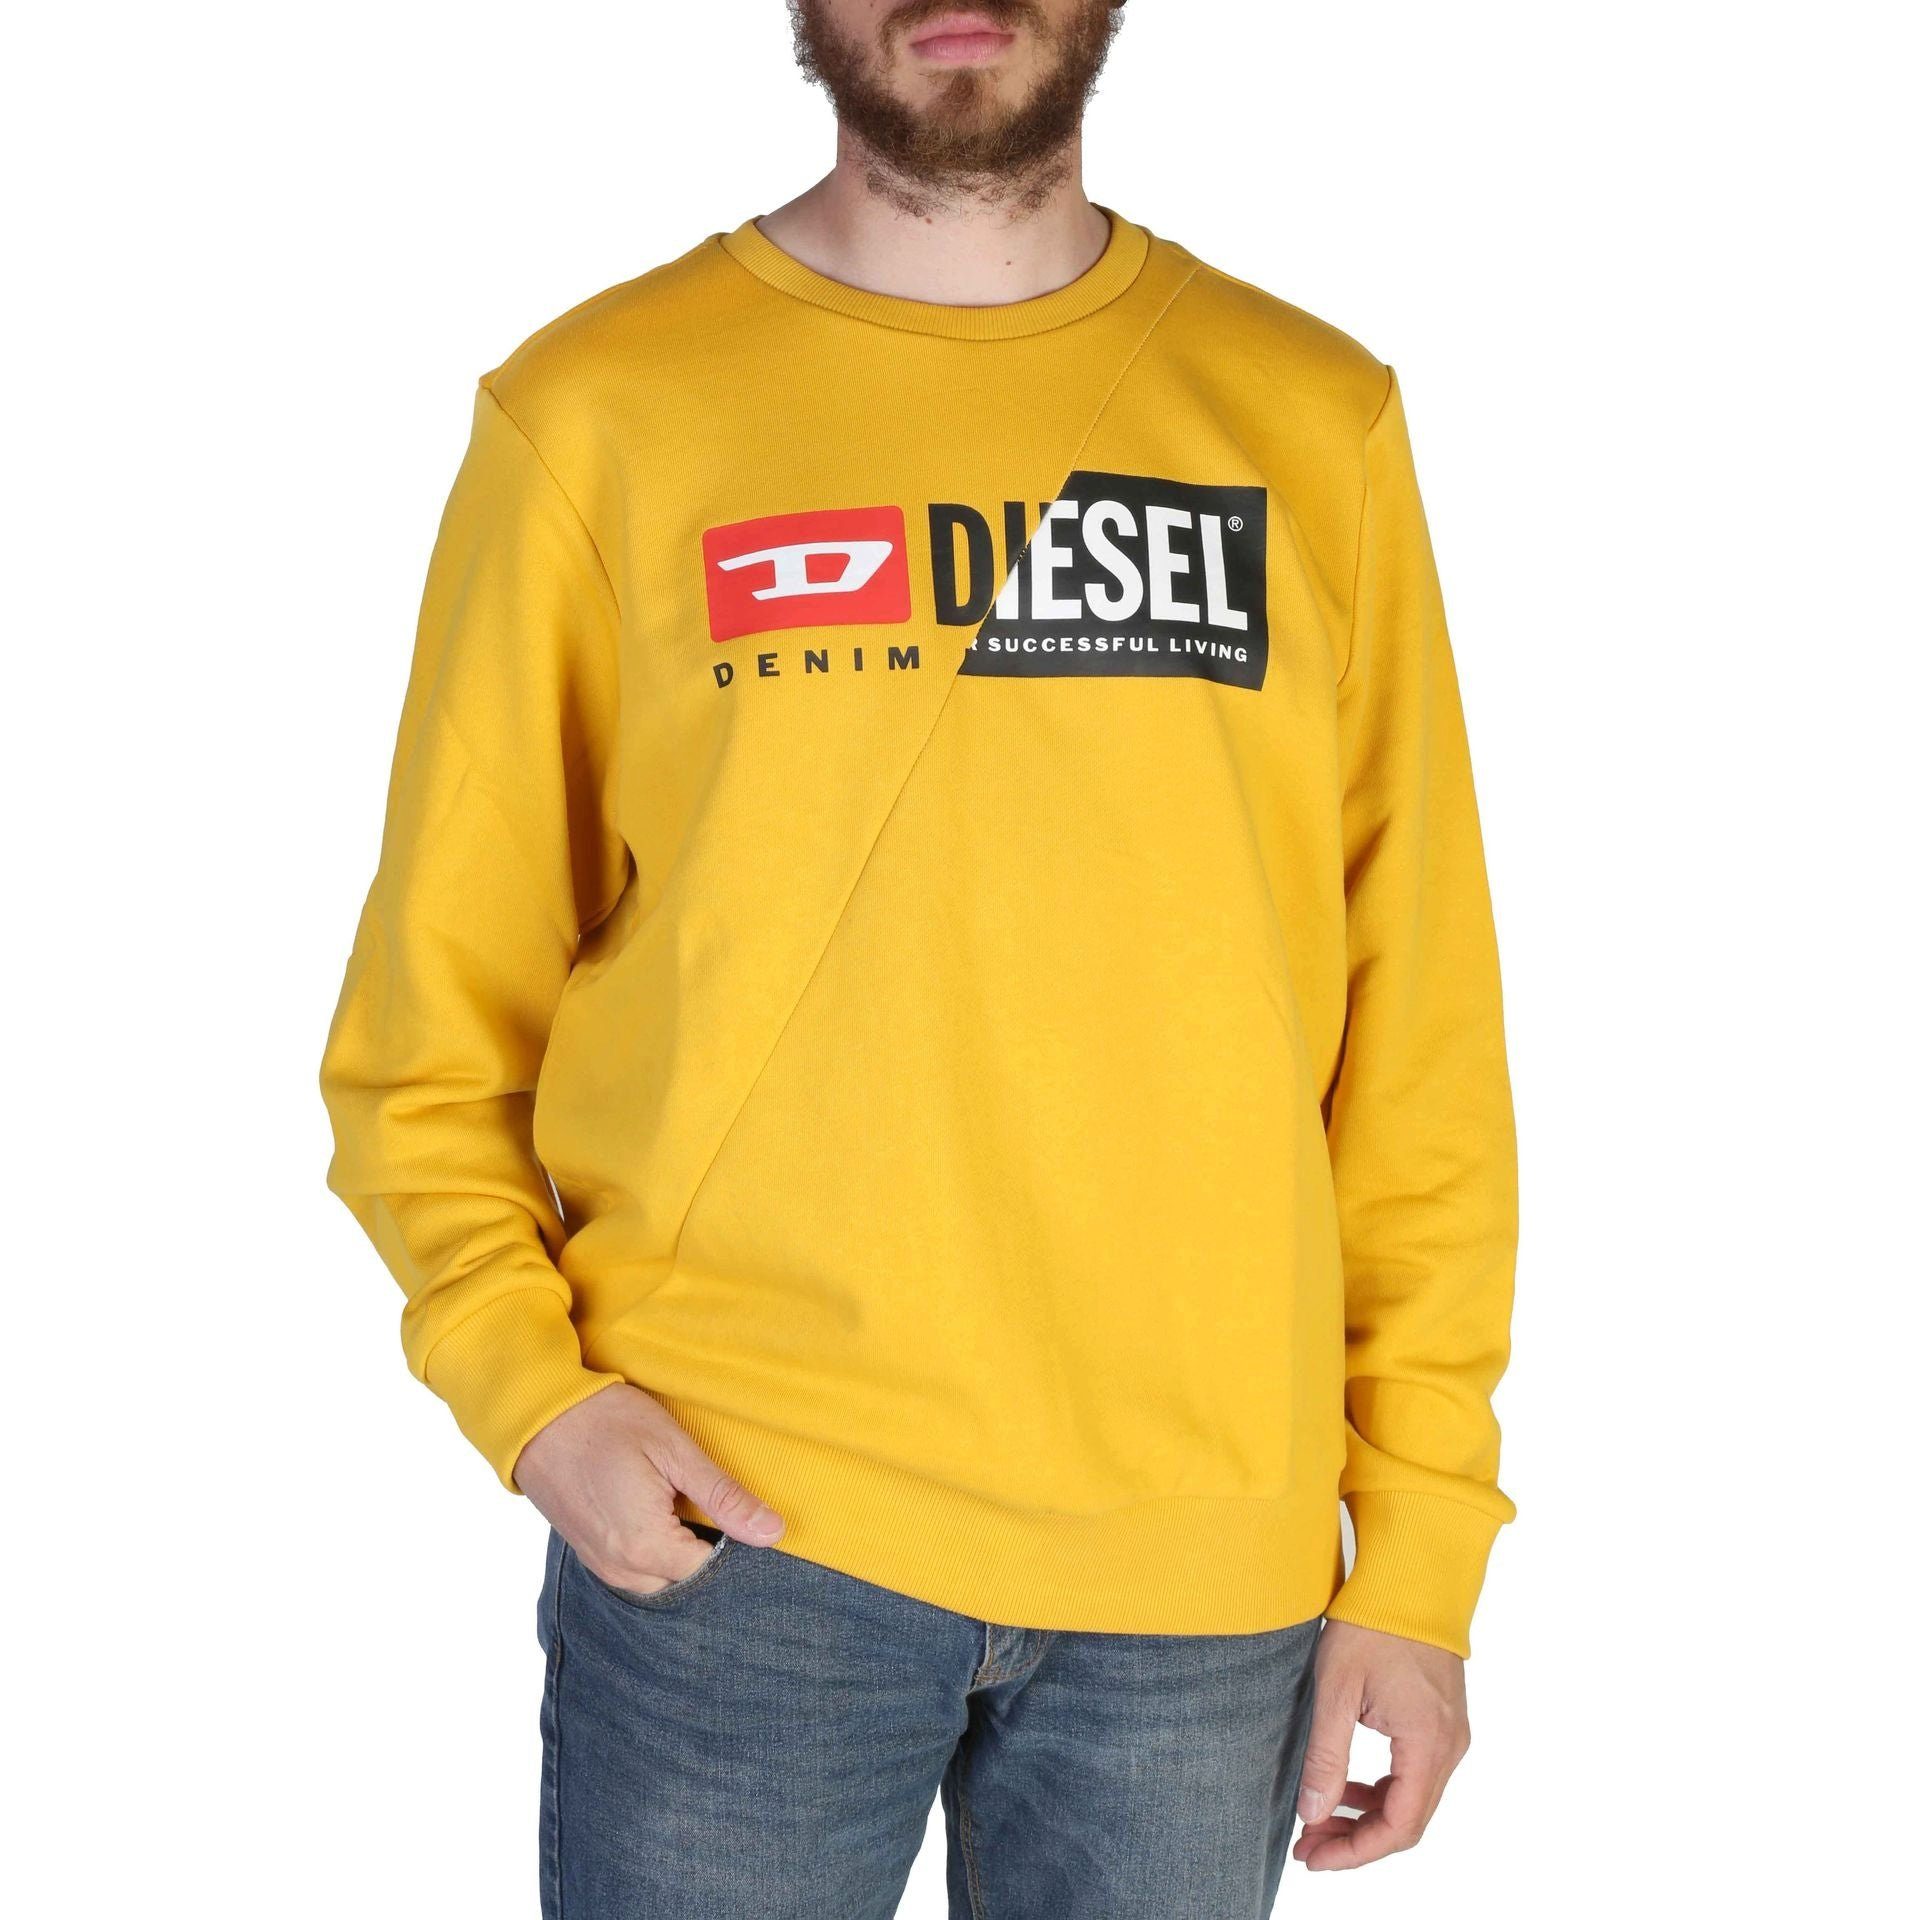 Diesel Sweatshirt Diesel Herren Sweatshirt Frühjahr/Sommer Ihr Kollektion, wartet! Komfort Sweatshirt neues Gelb Stil und - Diesel